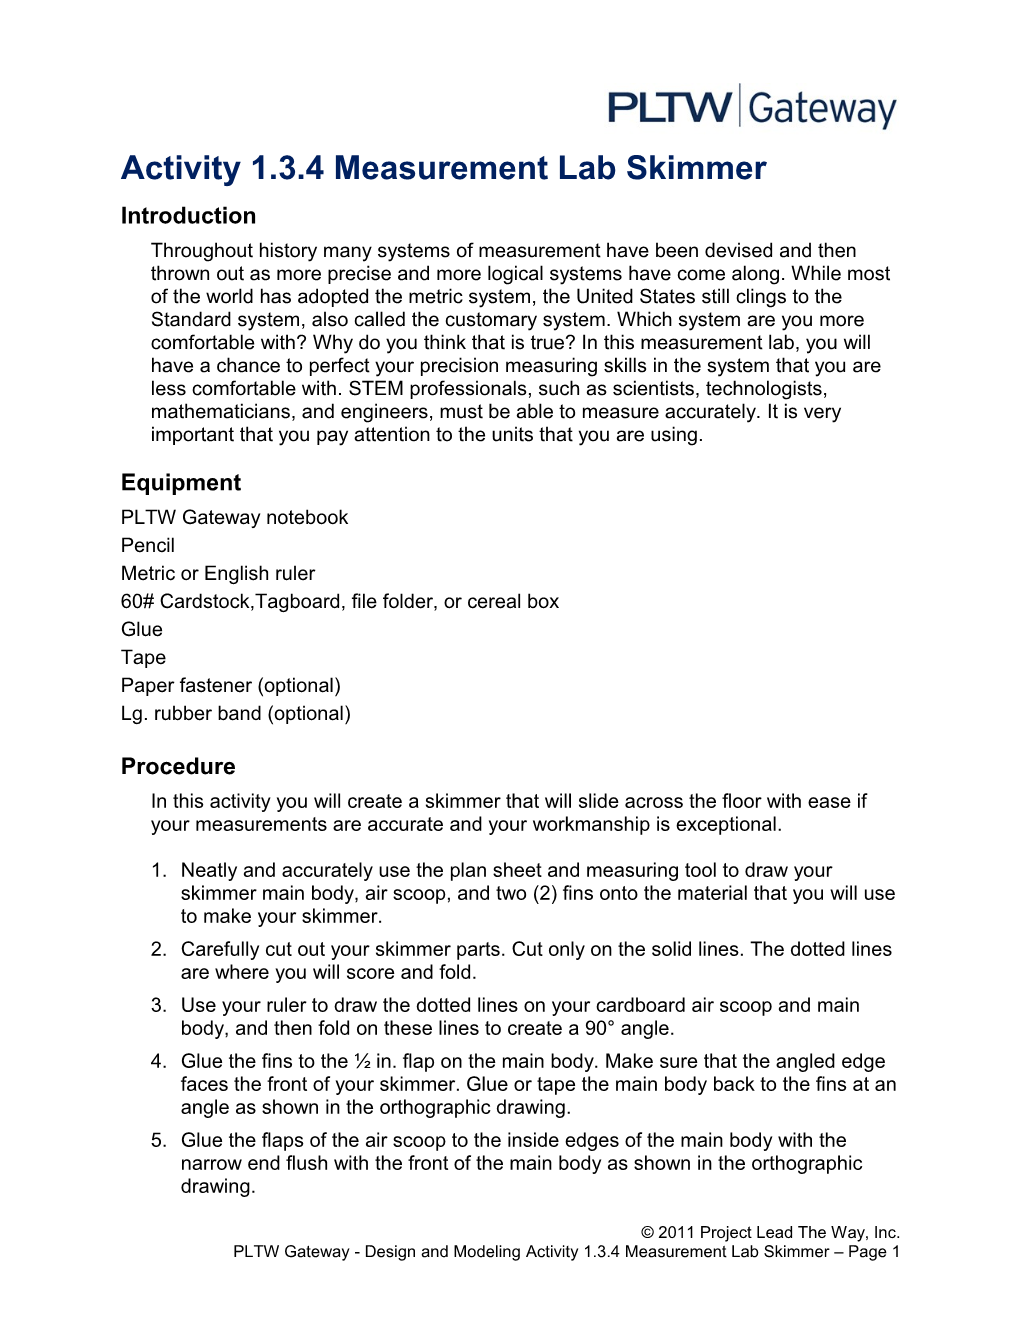 Activity 1.3.4 Measurement Lab - Skimmer